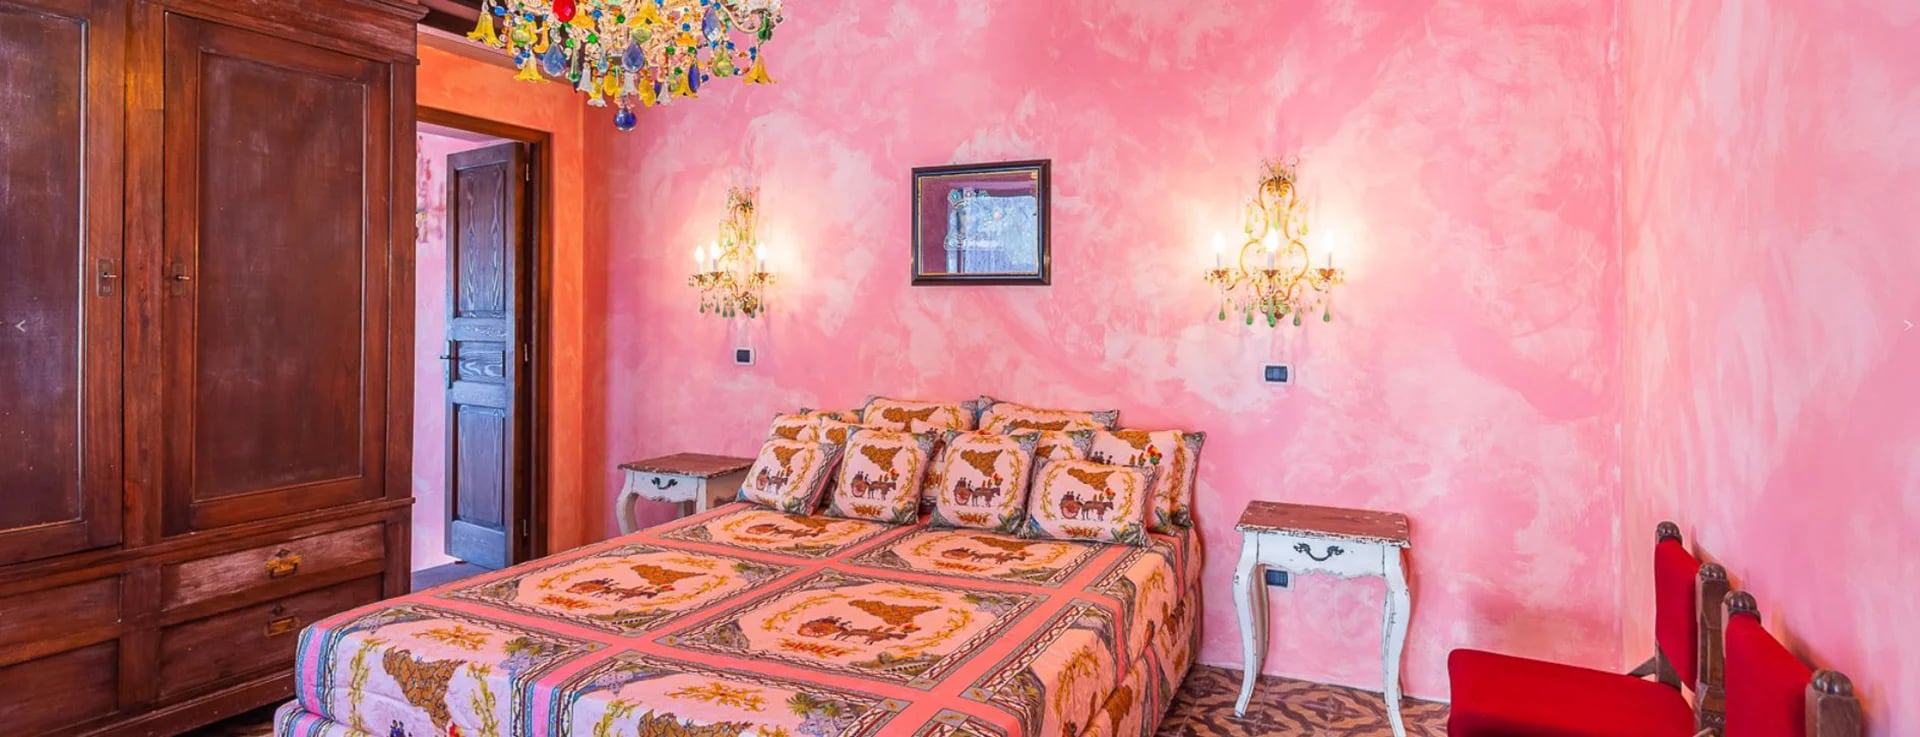 La habitación rosa: el estilo característico de Dolce & Gabbana se ve en toda la casa, con cada suite en su propio color y sofás y muebles suaves acabados en las telas de la casa de moda